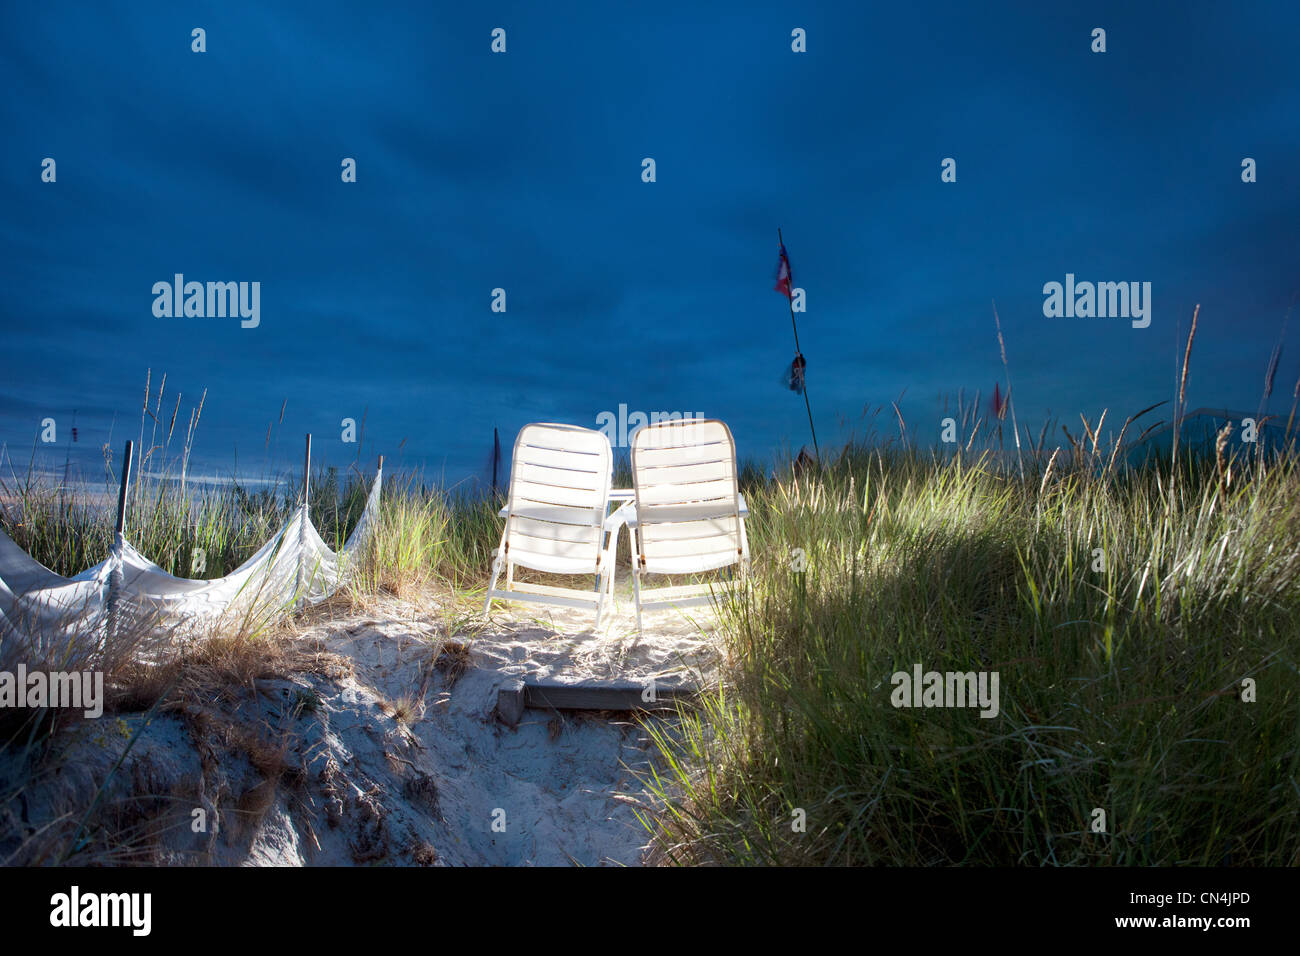 Chaises de plage lumineux sur dune de sable, mer Baltique, Allemagne Banque D'Images